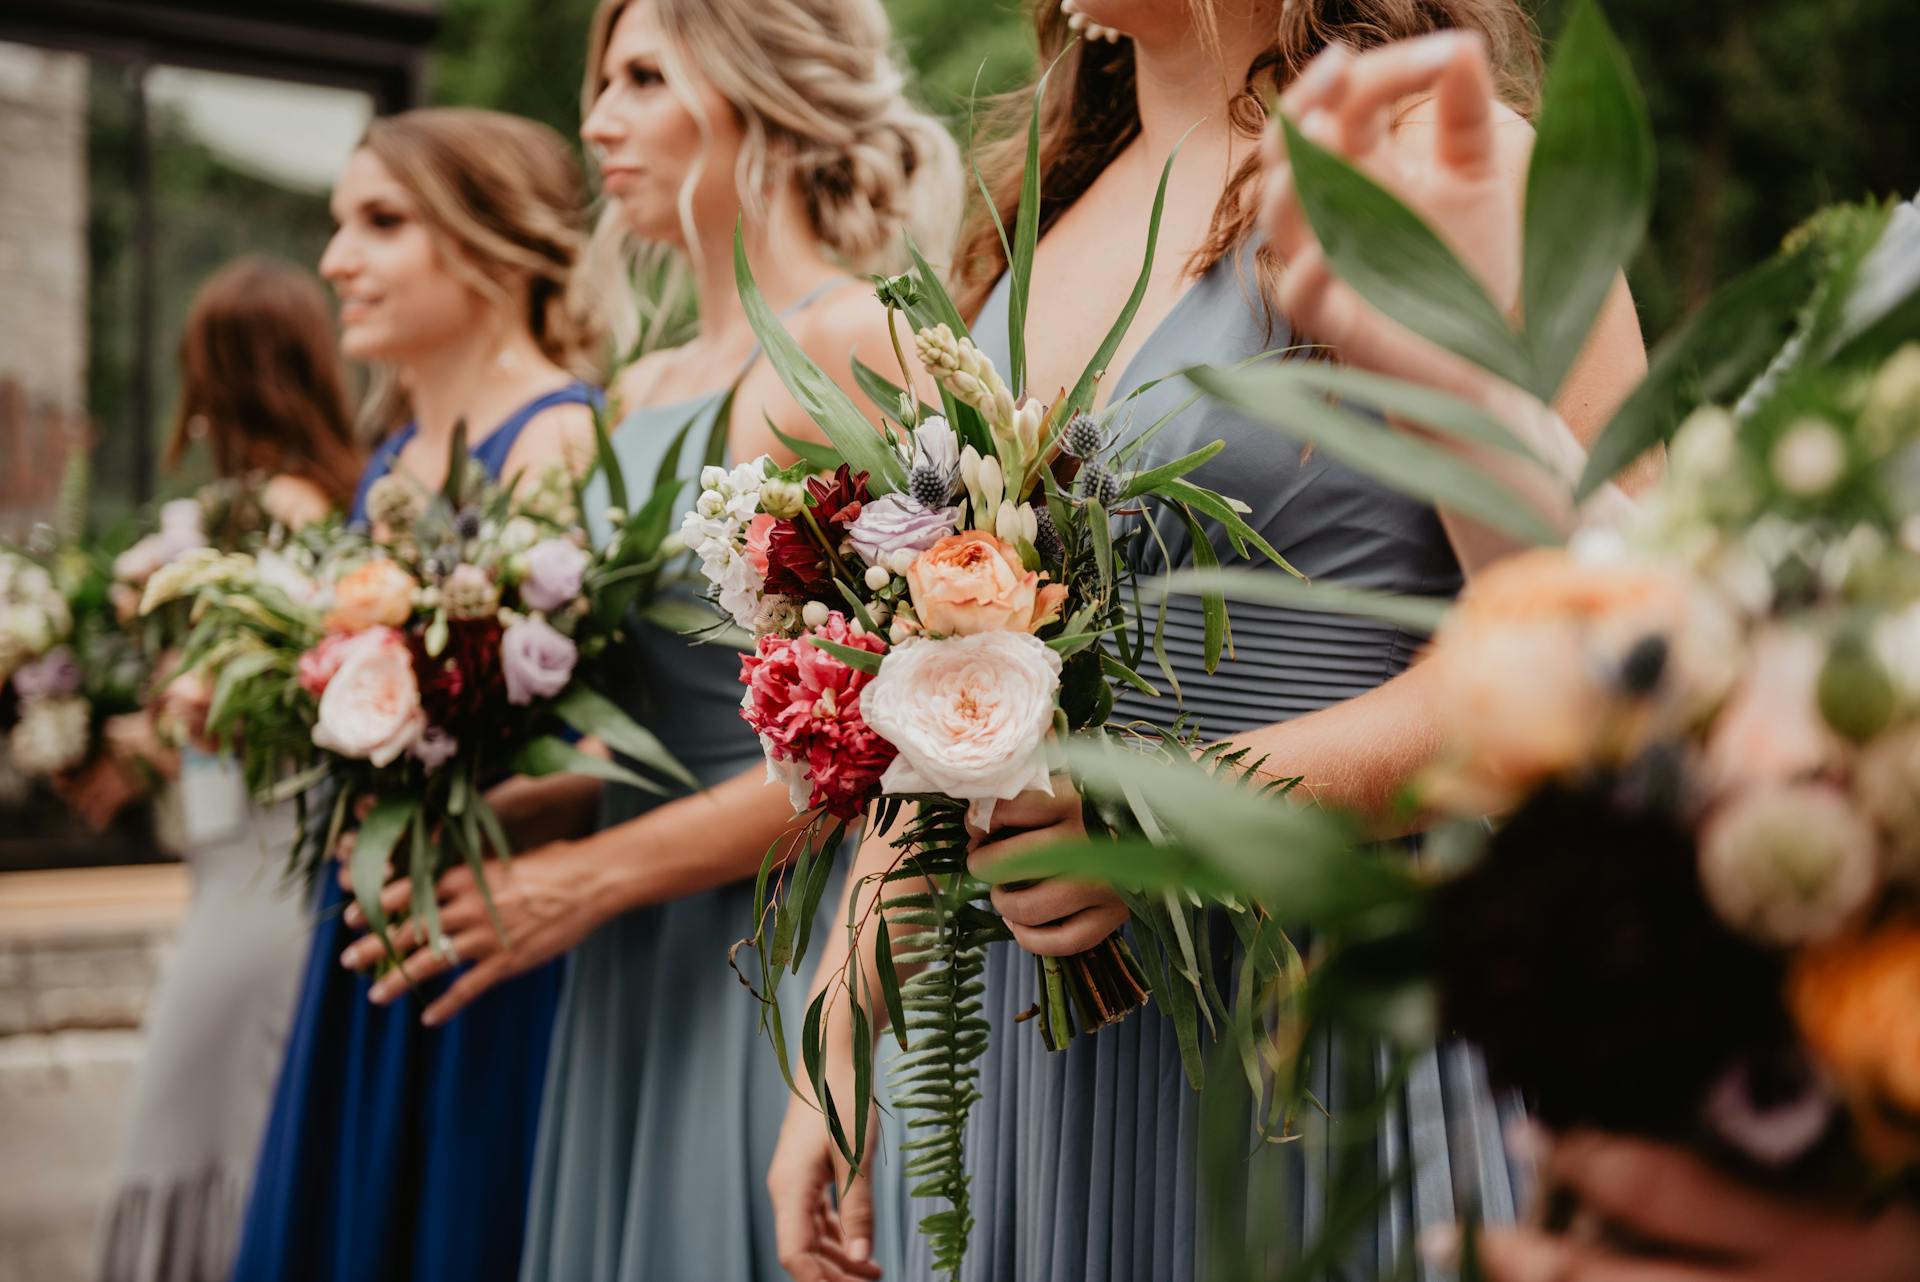 Damas de honor sosteniendo flores el día de la boda | Fuente: Pexels